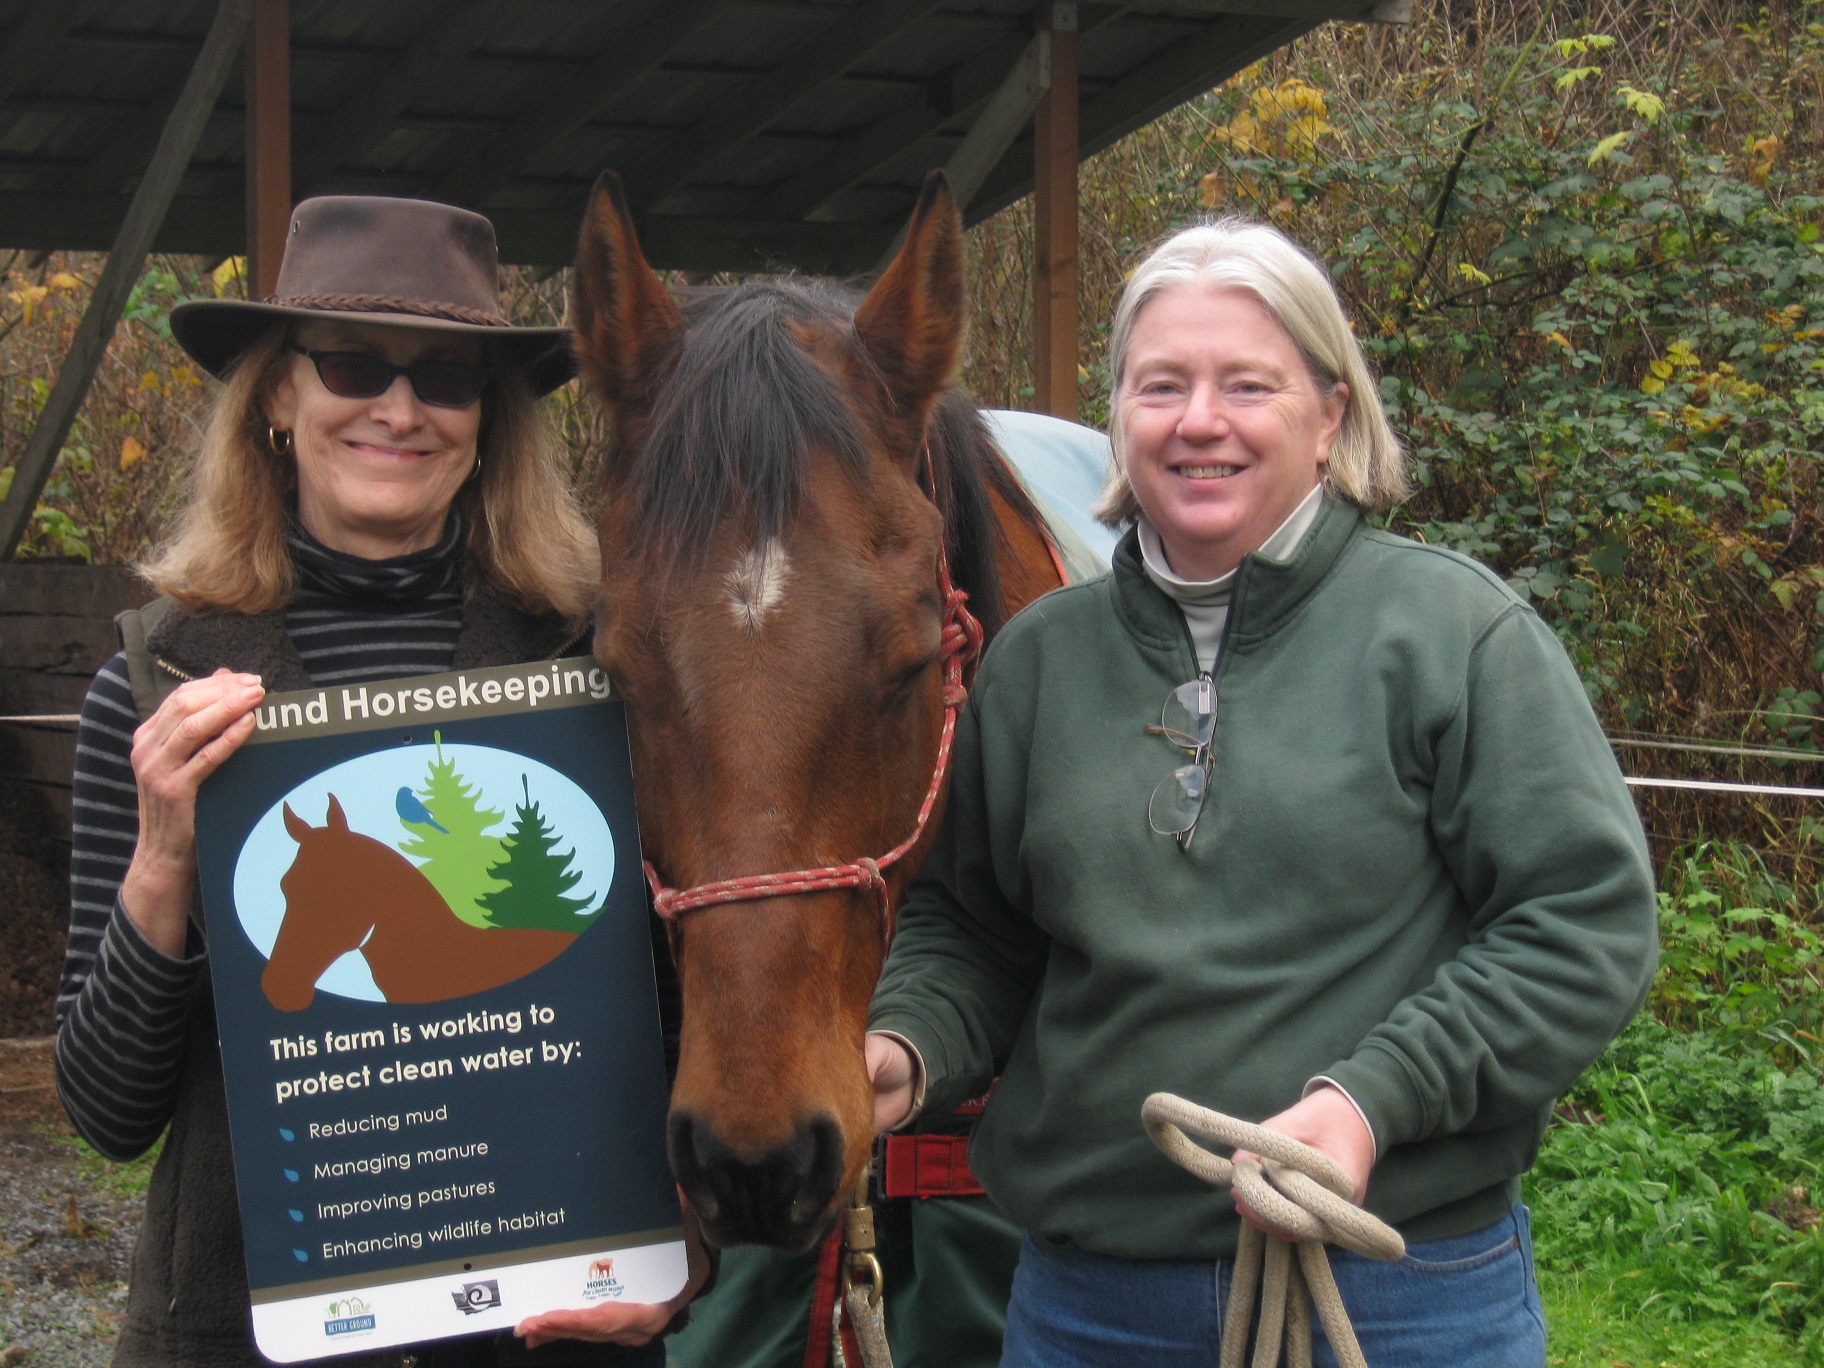 Joan Deutsch & Jan Capps (Friends of the Seattle Mounted Patrol) resized.jpg